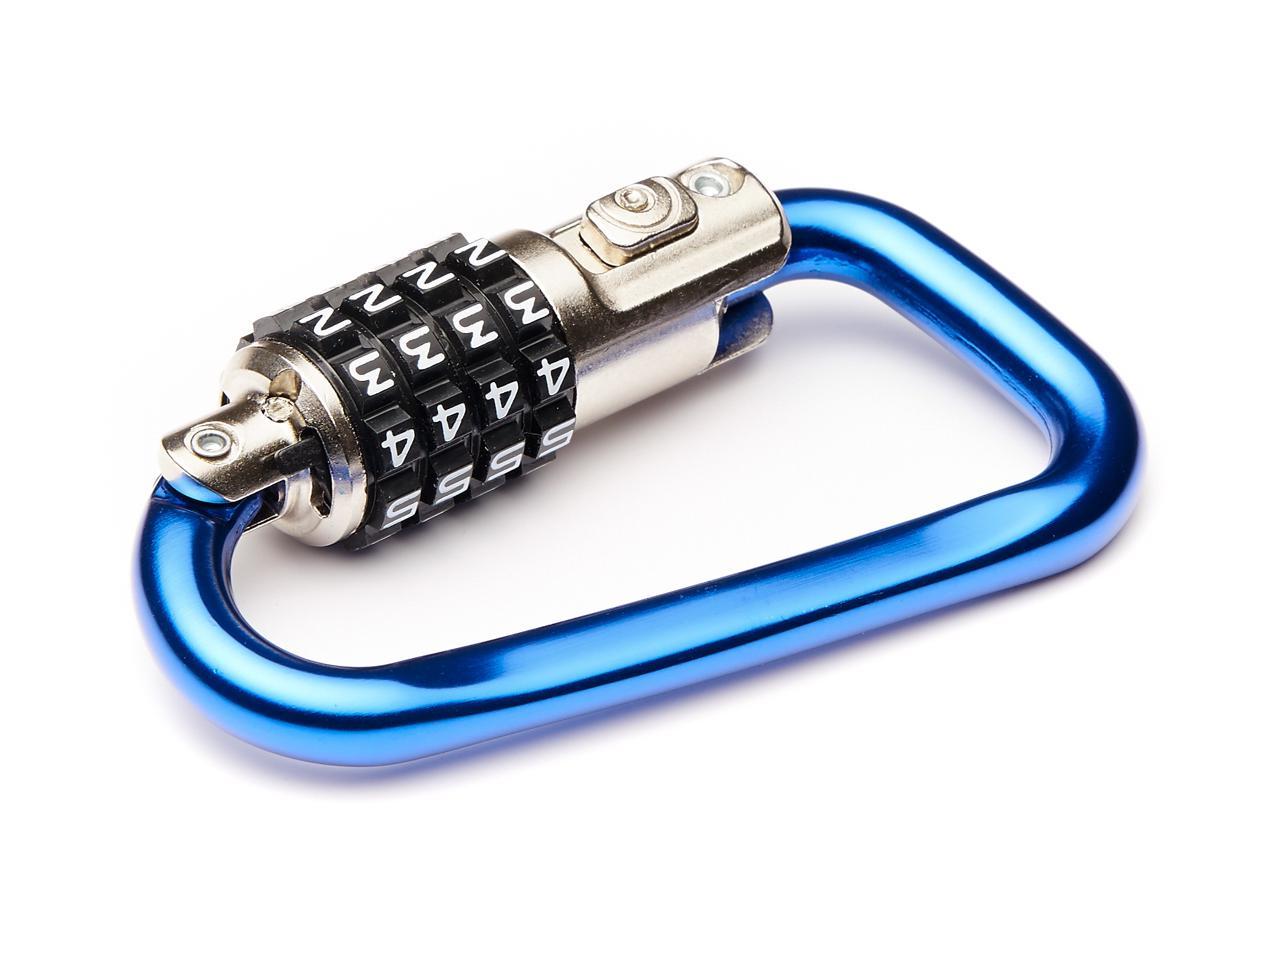 EyezOff 3.5" Carabiner Aluminum Multi Purpose Lock 4-Dial Combination D-Shape (Blue)